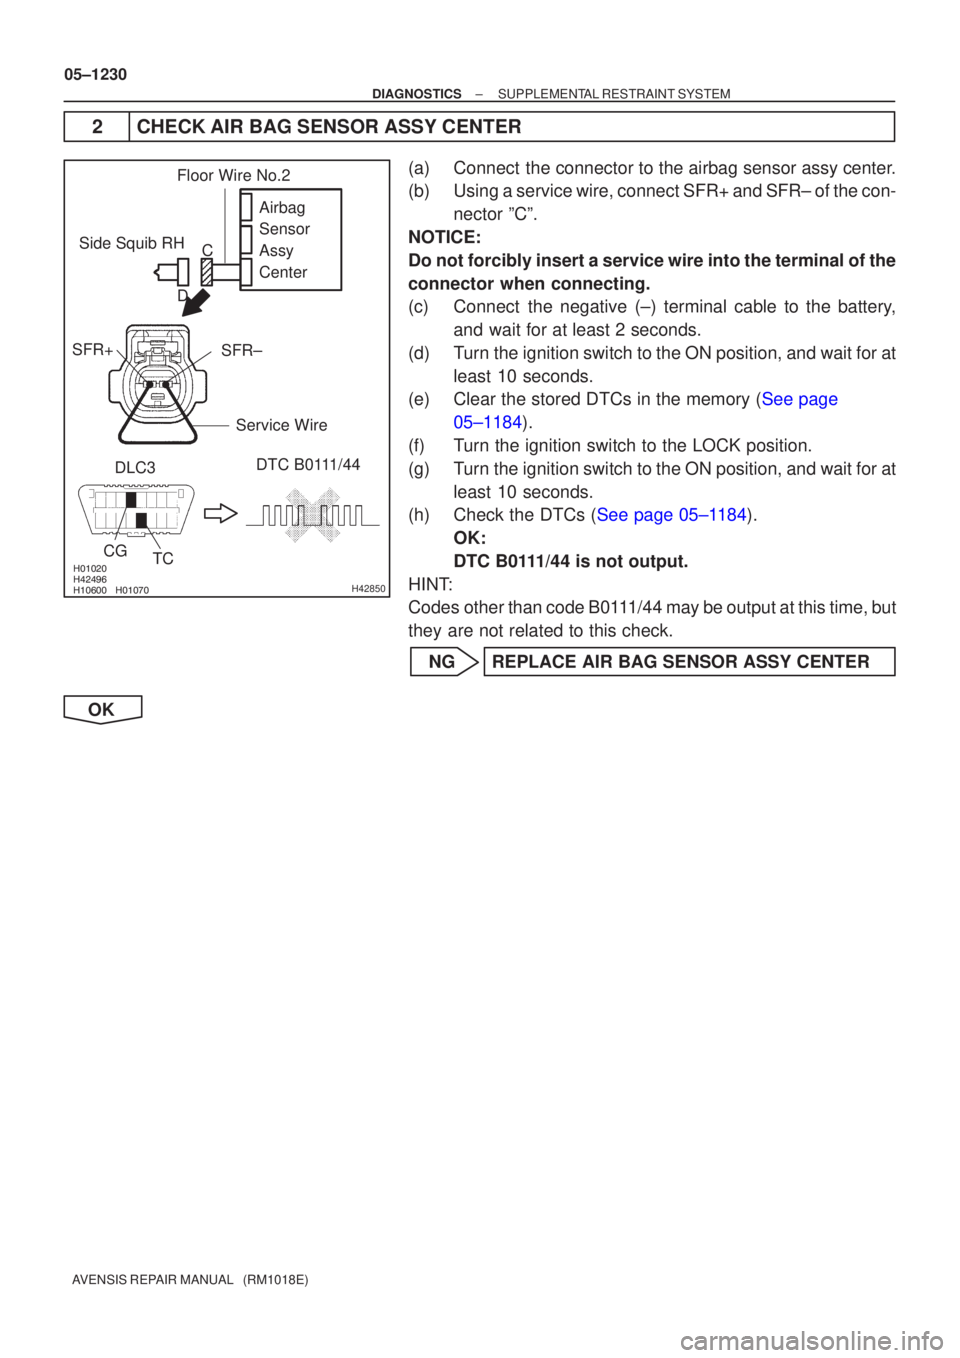 TOYOTA AVENSIS 2005  Service Repair Manual \b
\b \b\bH42850
Side Squib RH
SFR+
SFR±
DTC B0111/44
DLC3
CG TC Airbag 
Sensor 
Assy
Center
Floor Wire No.2
Service Wire
D
C
05±1230
±
DIAGNOSTICS SUPPLEMENTAL RESTRAINT SYSTEM